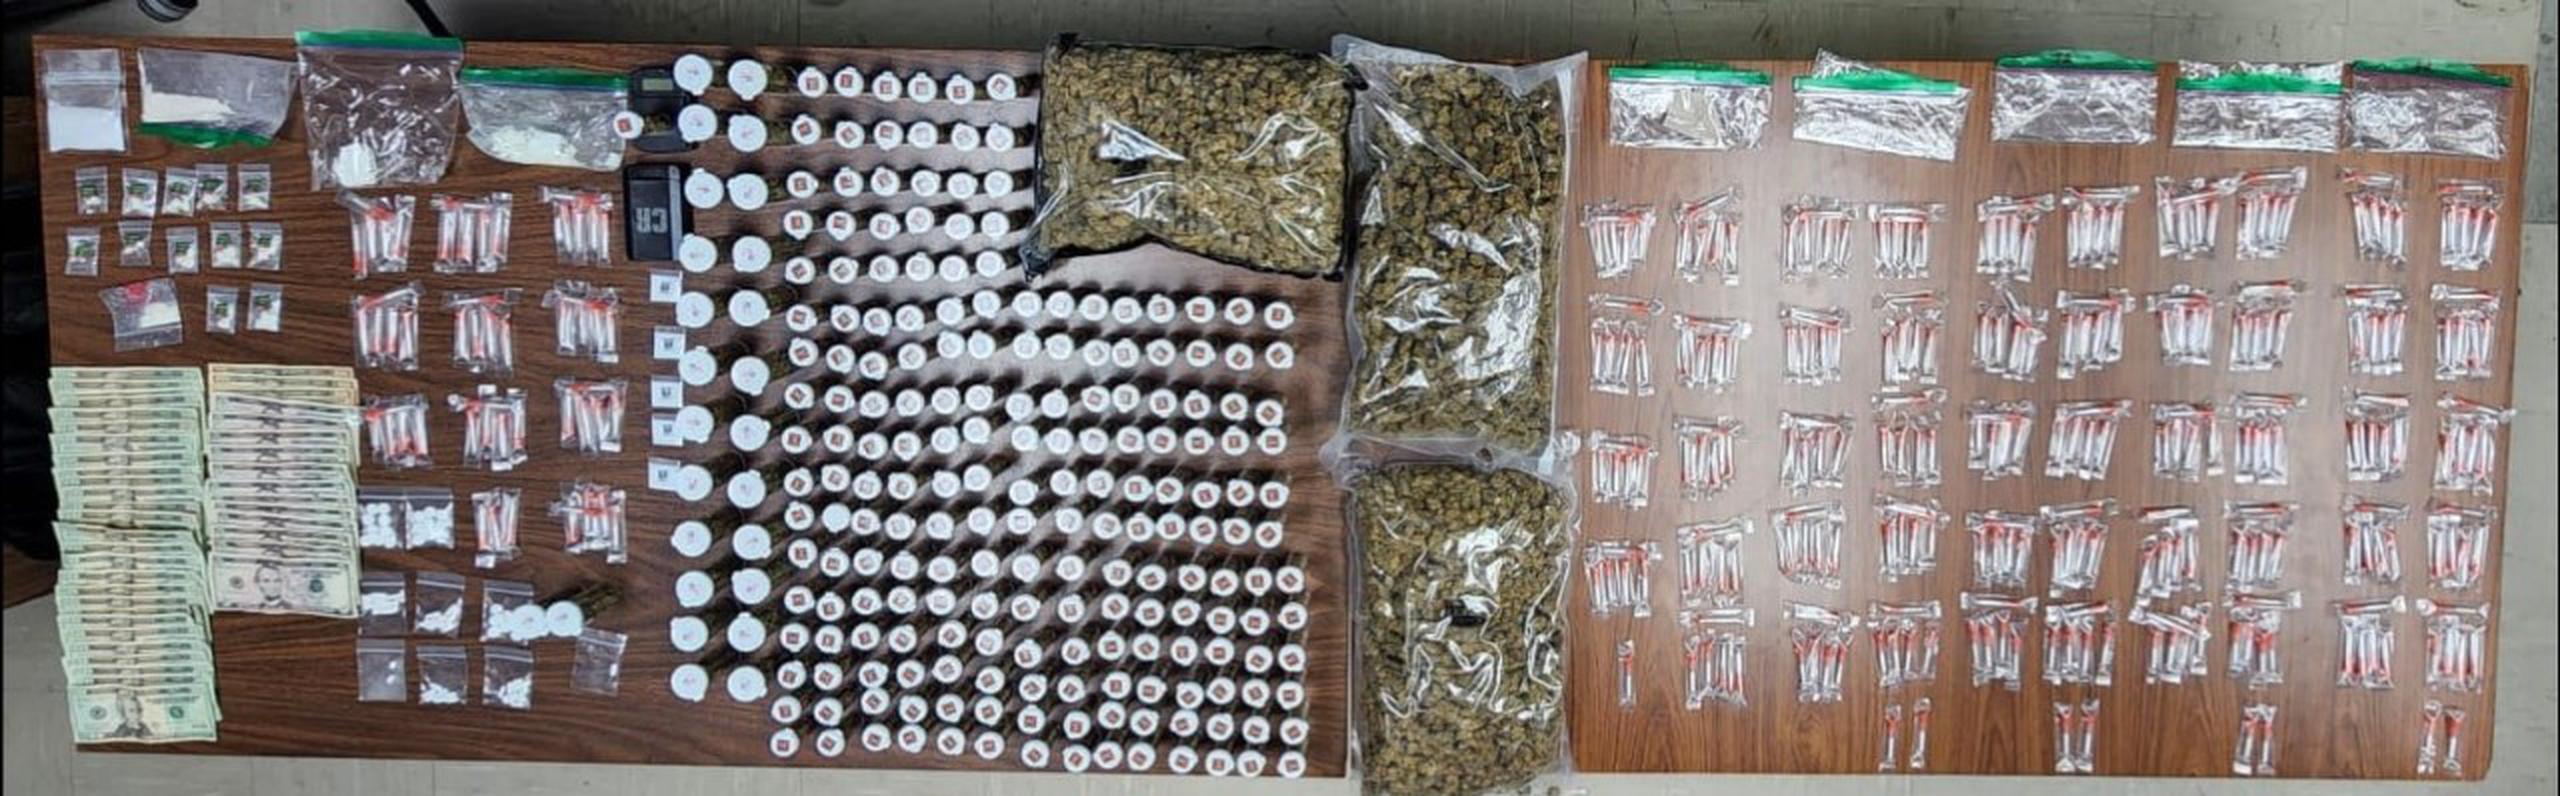 Un hombre fue arrestado durante un allanamiento en su residencia del barrio Ingenio, en Toa Baja, donde ocuparon variedad de sustancias controladas.